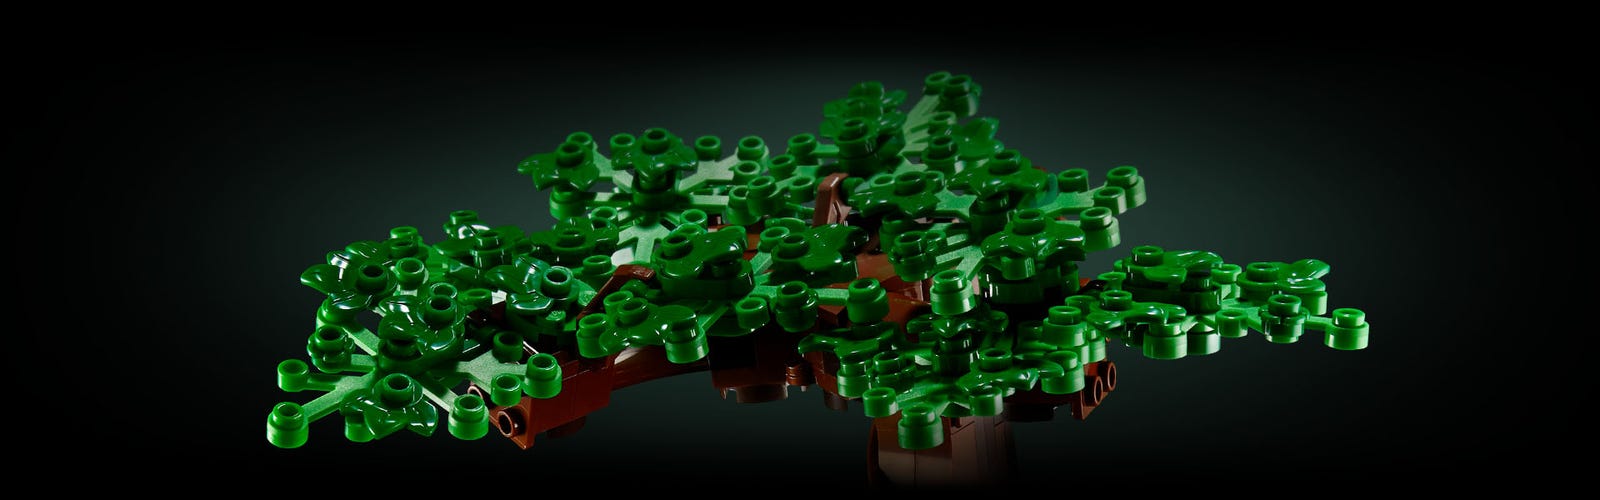 Albero Bonsai LEGO